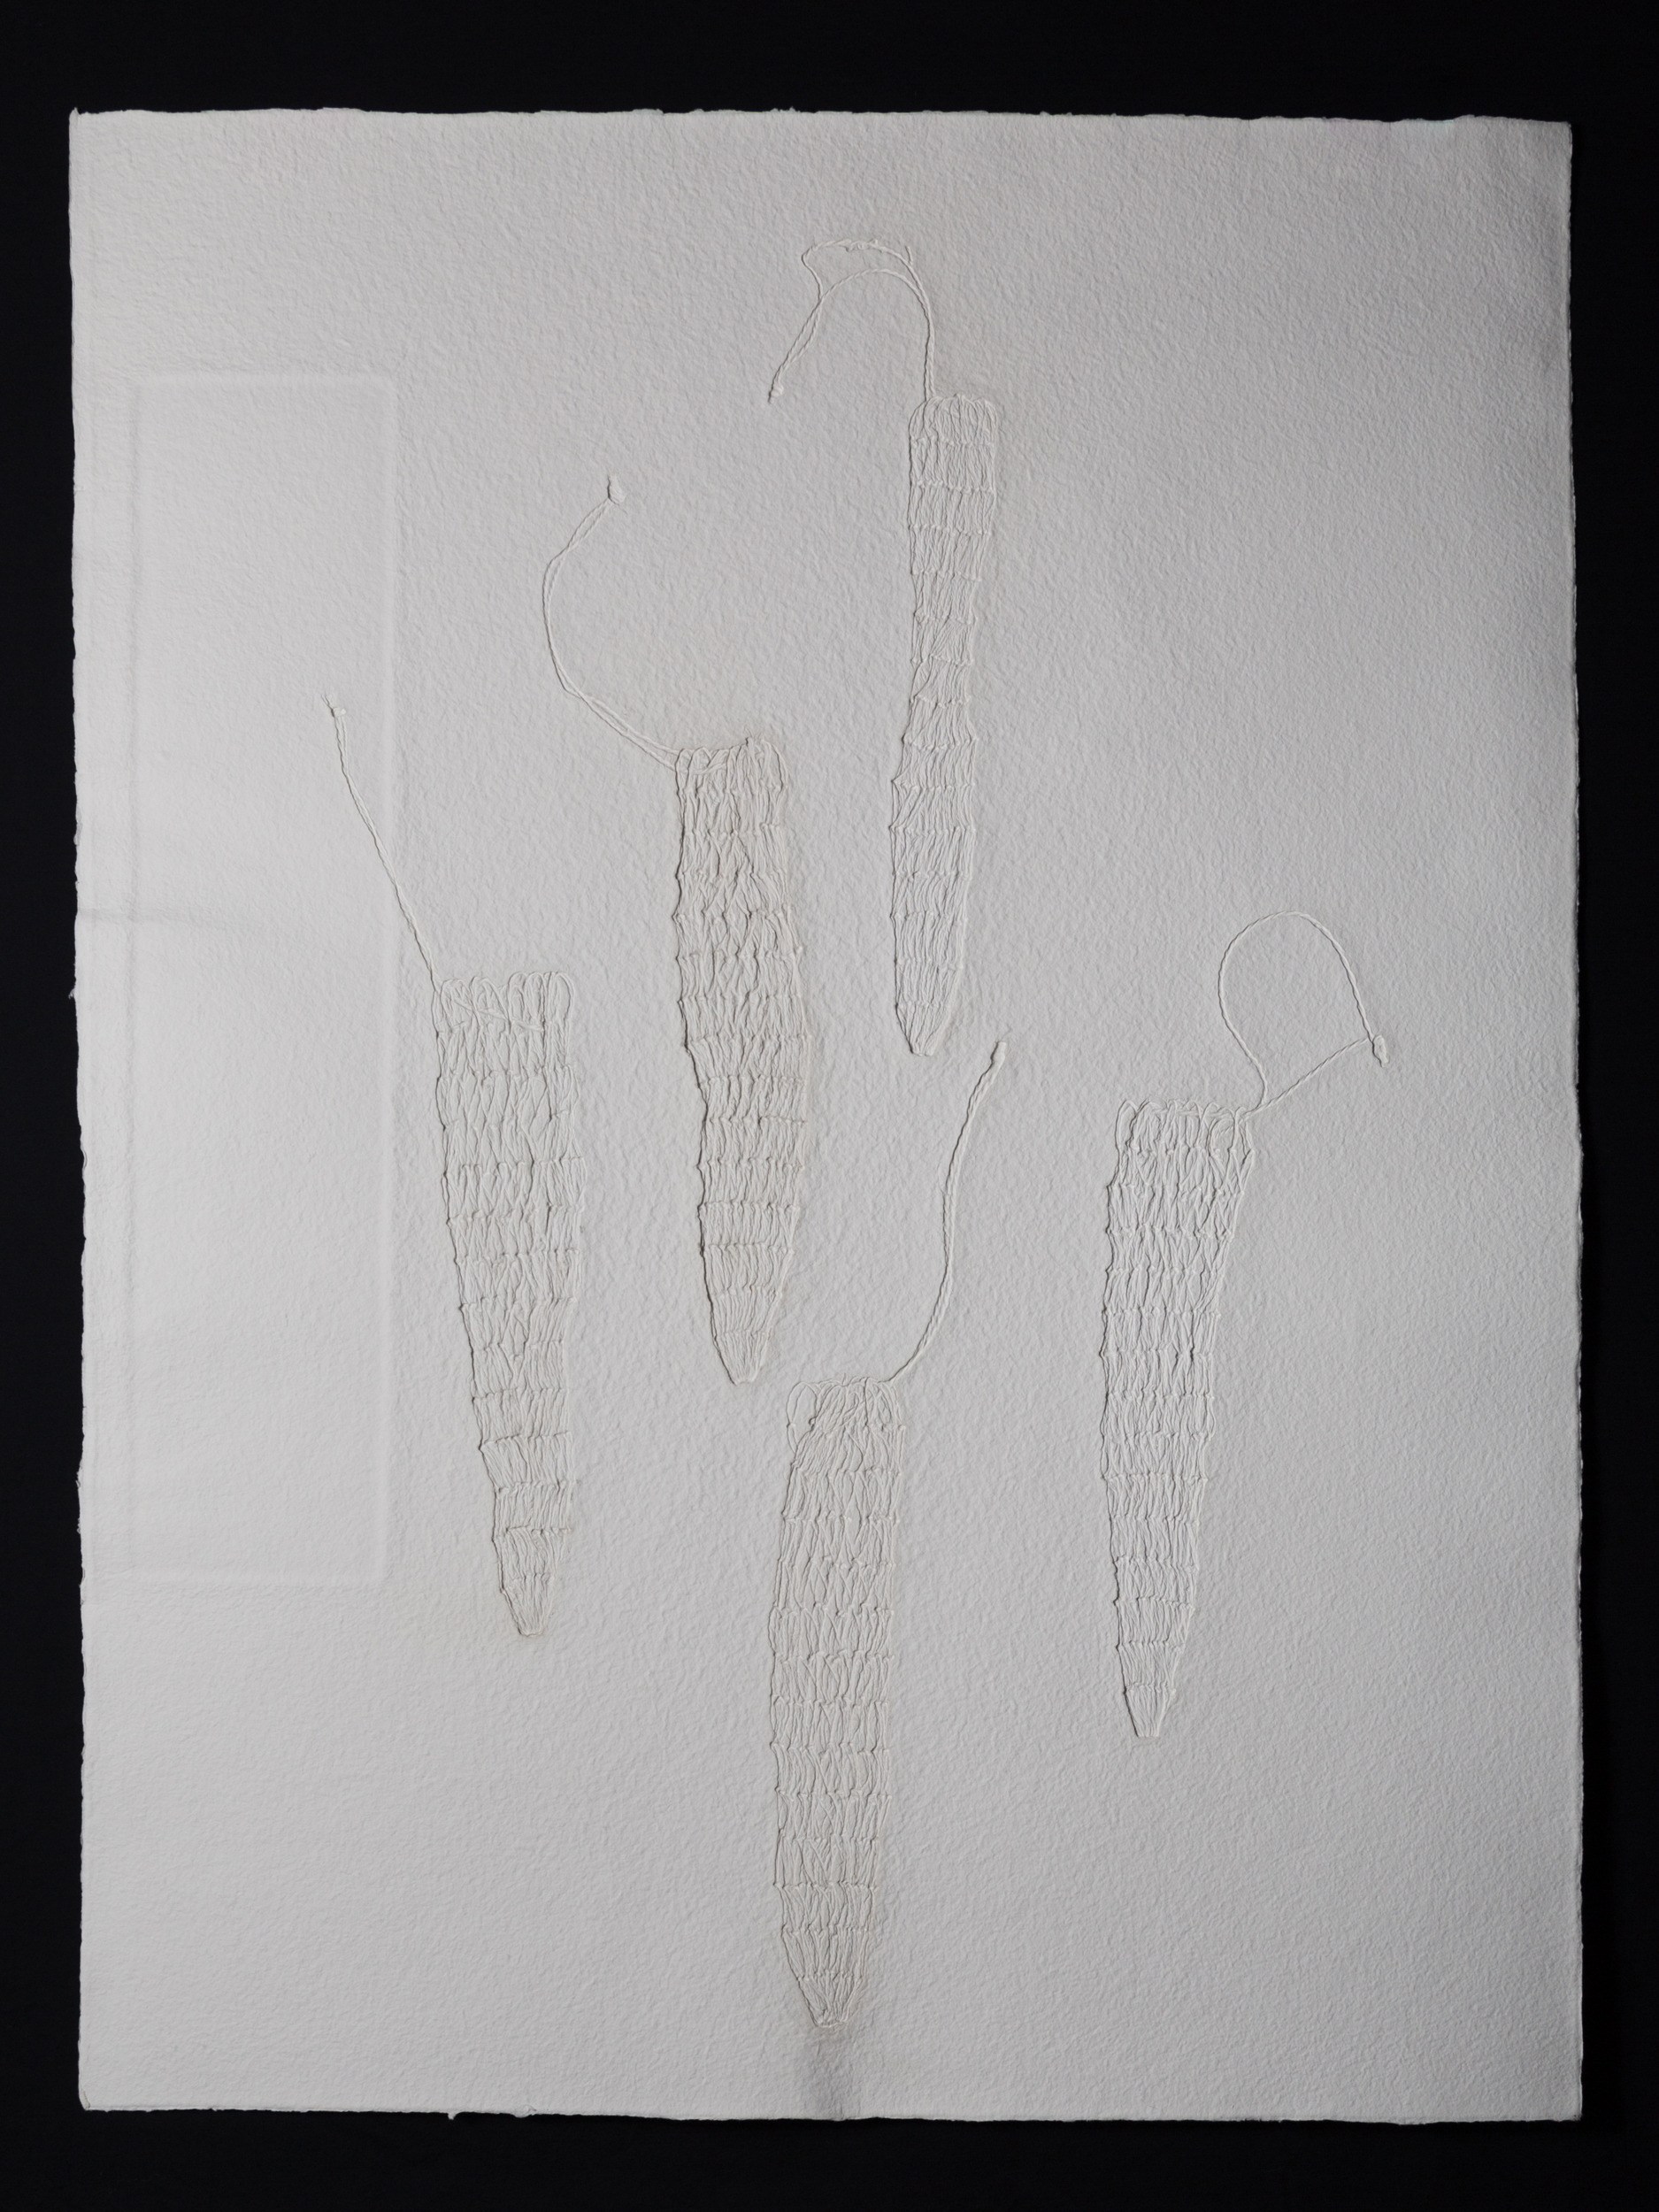   Remainder , 2017, cast cotton paper, 30" x 22" 